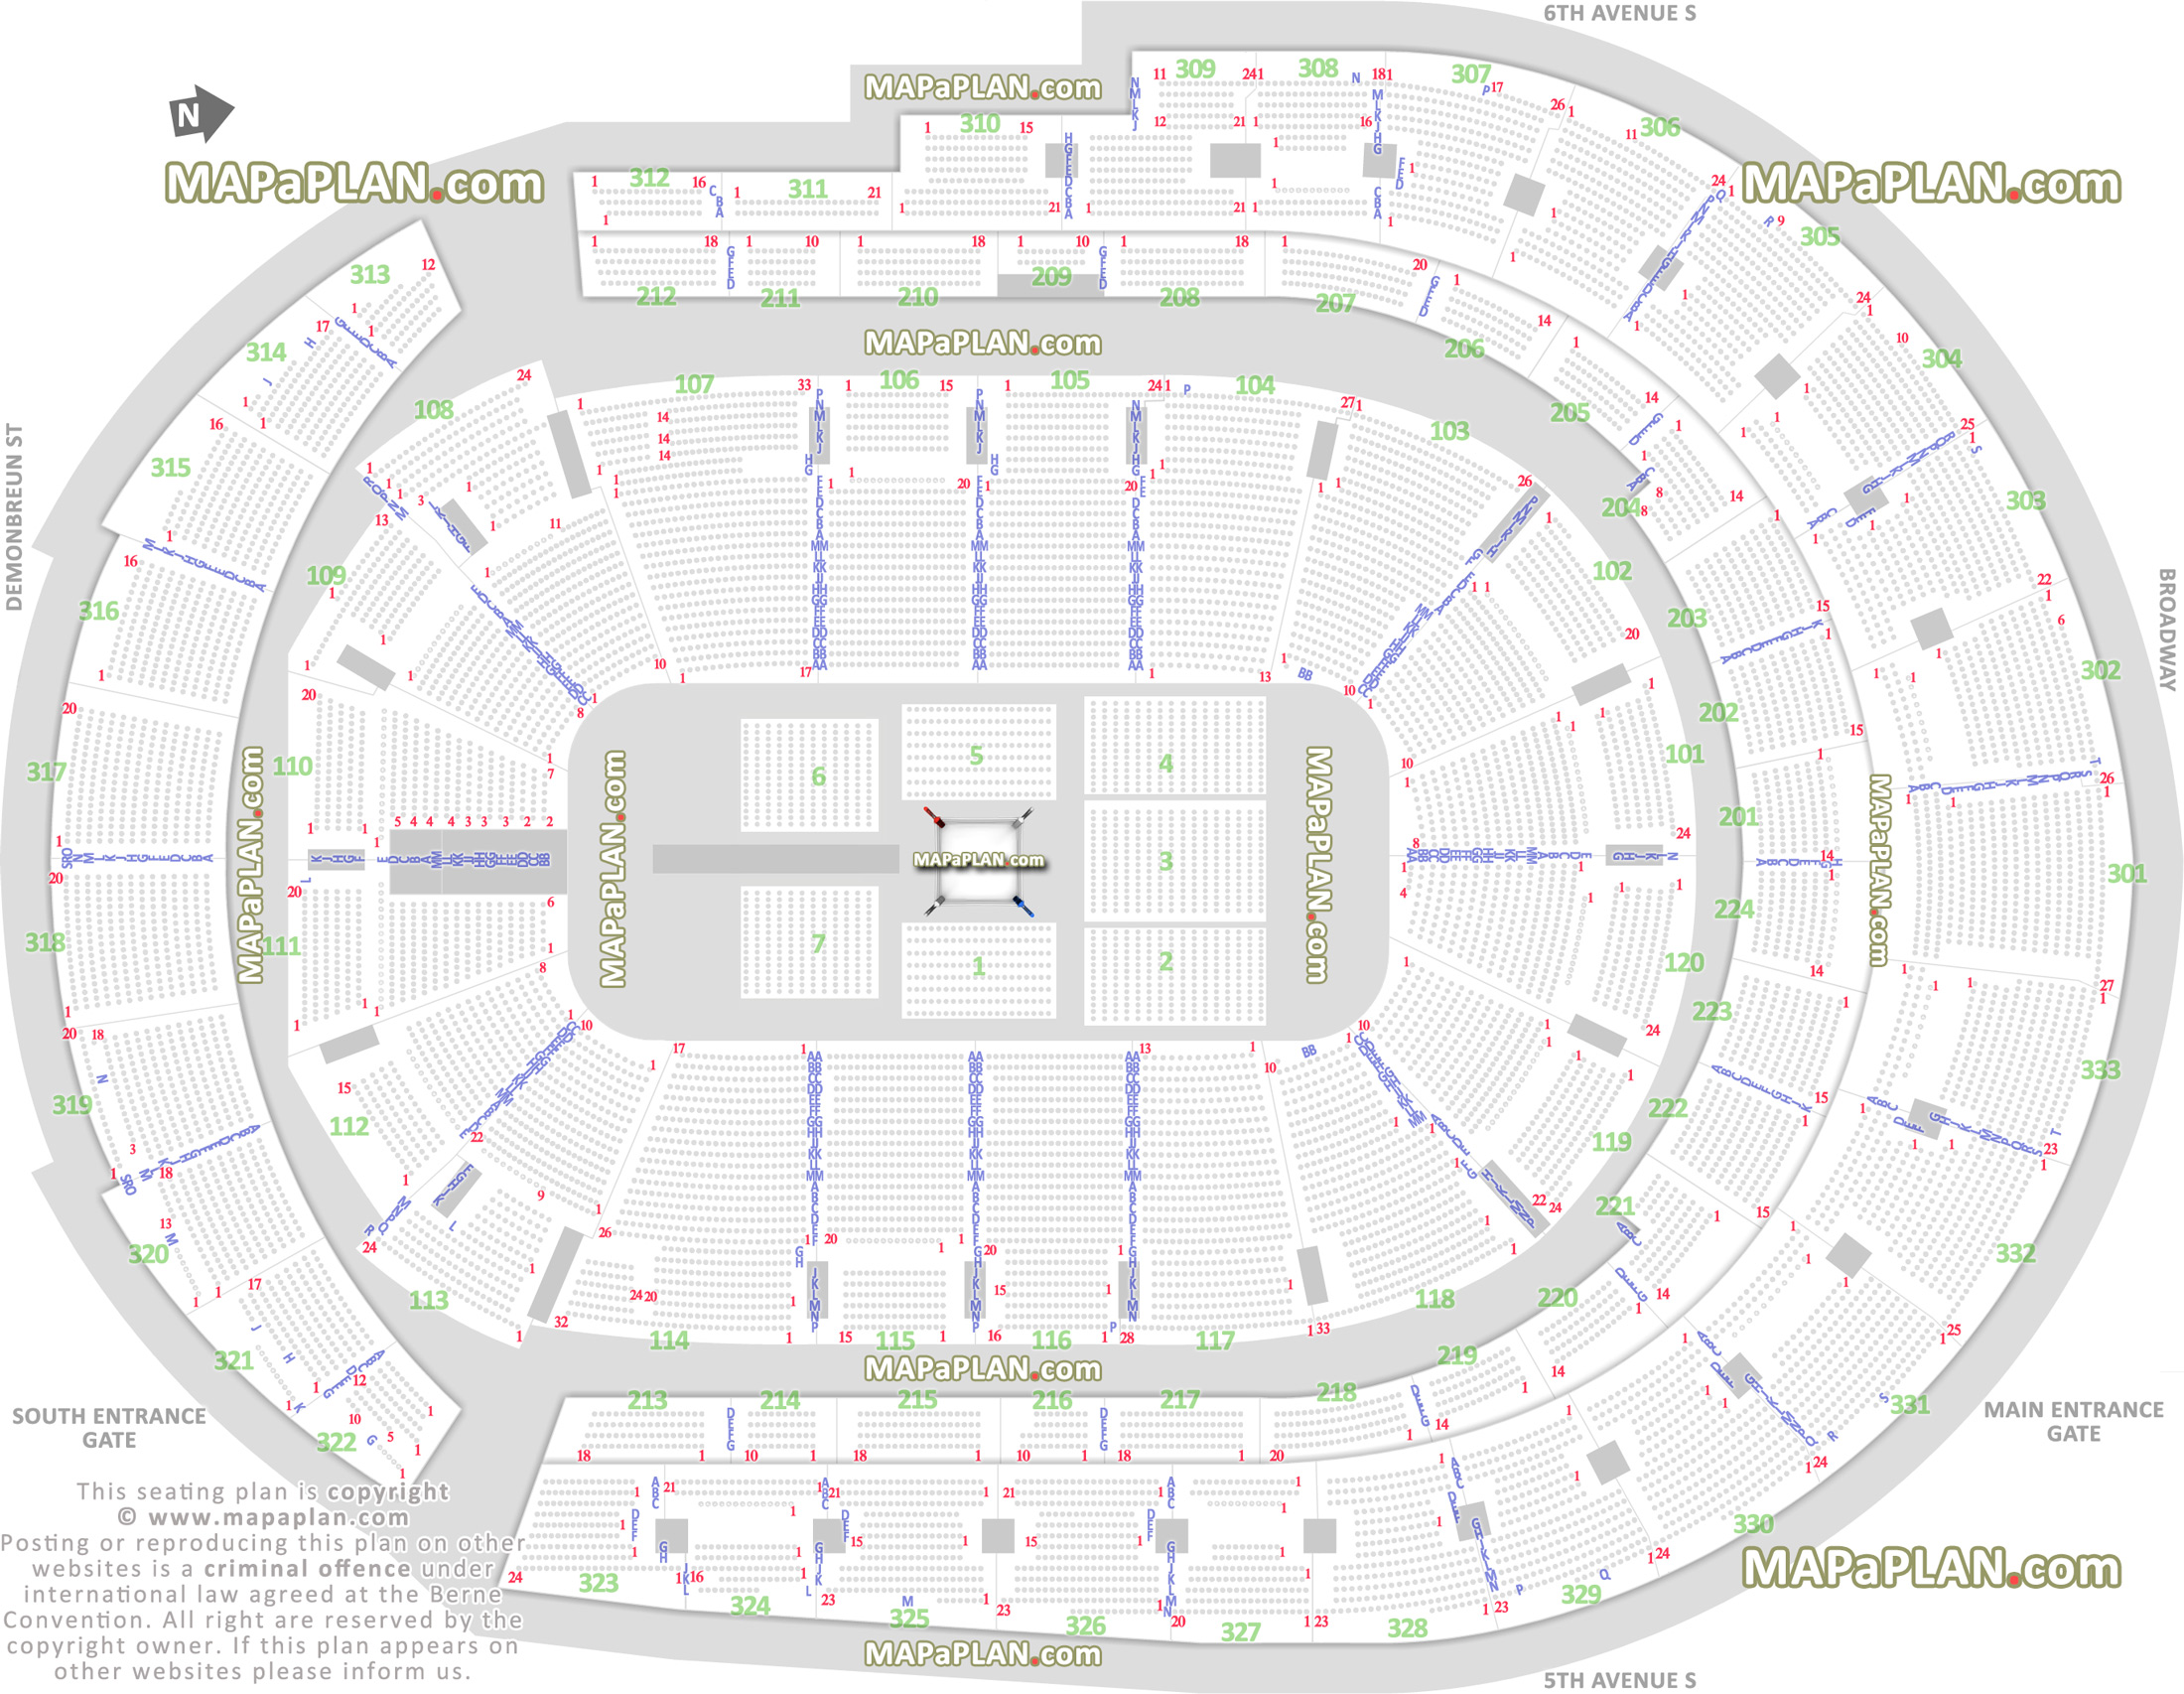 Wwe Raw Seating Chart Bridgestone Arena